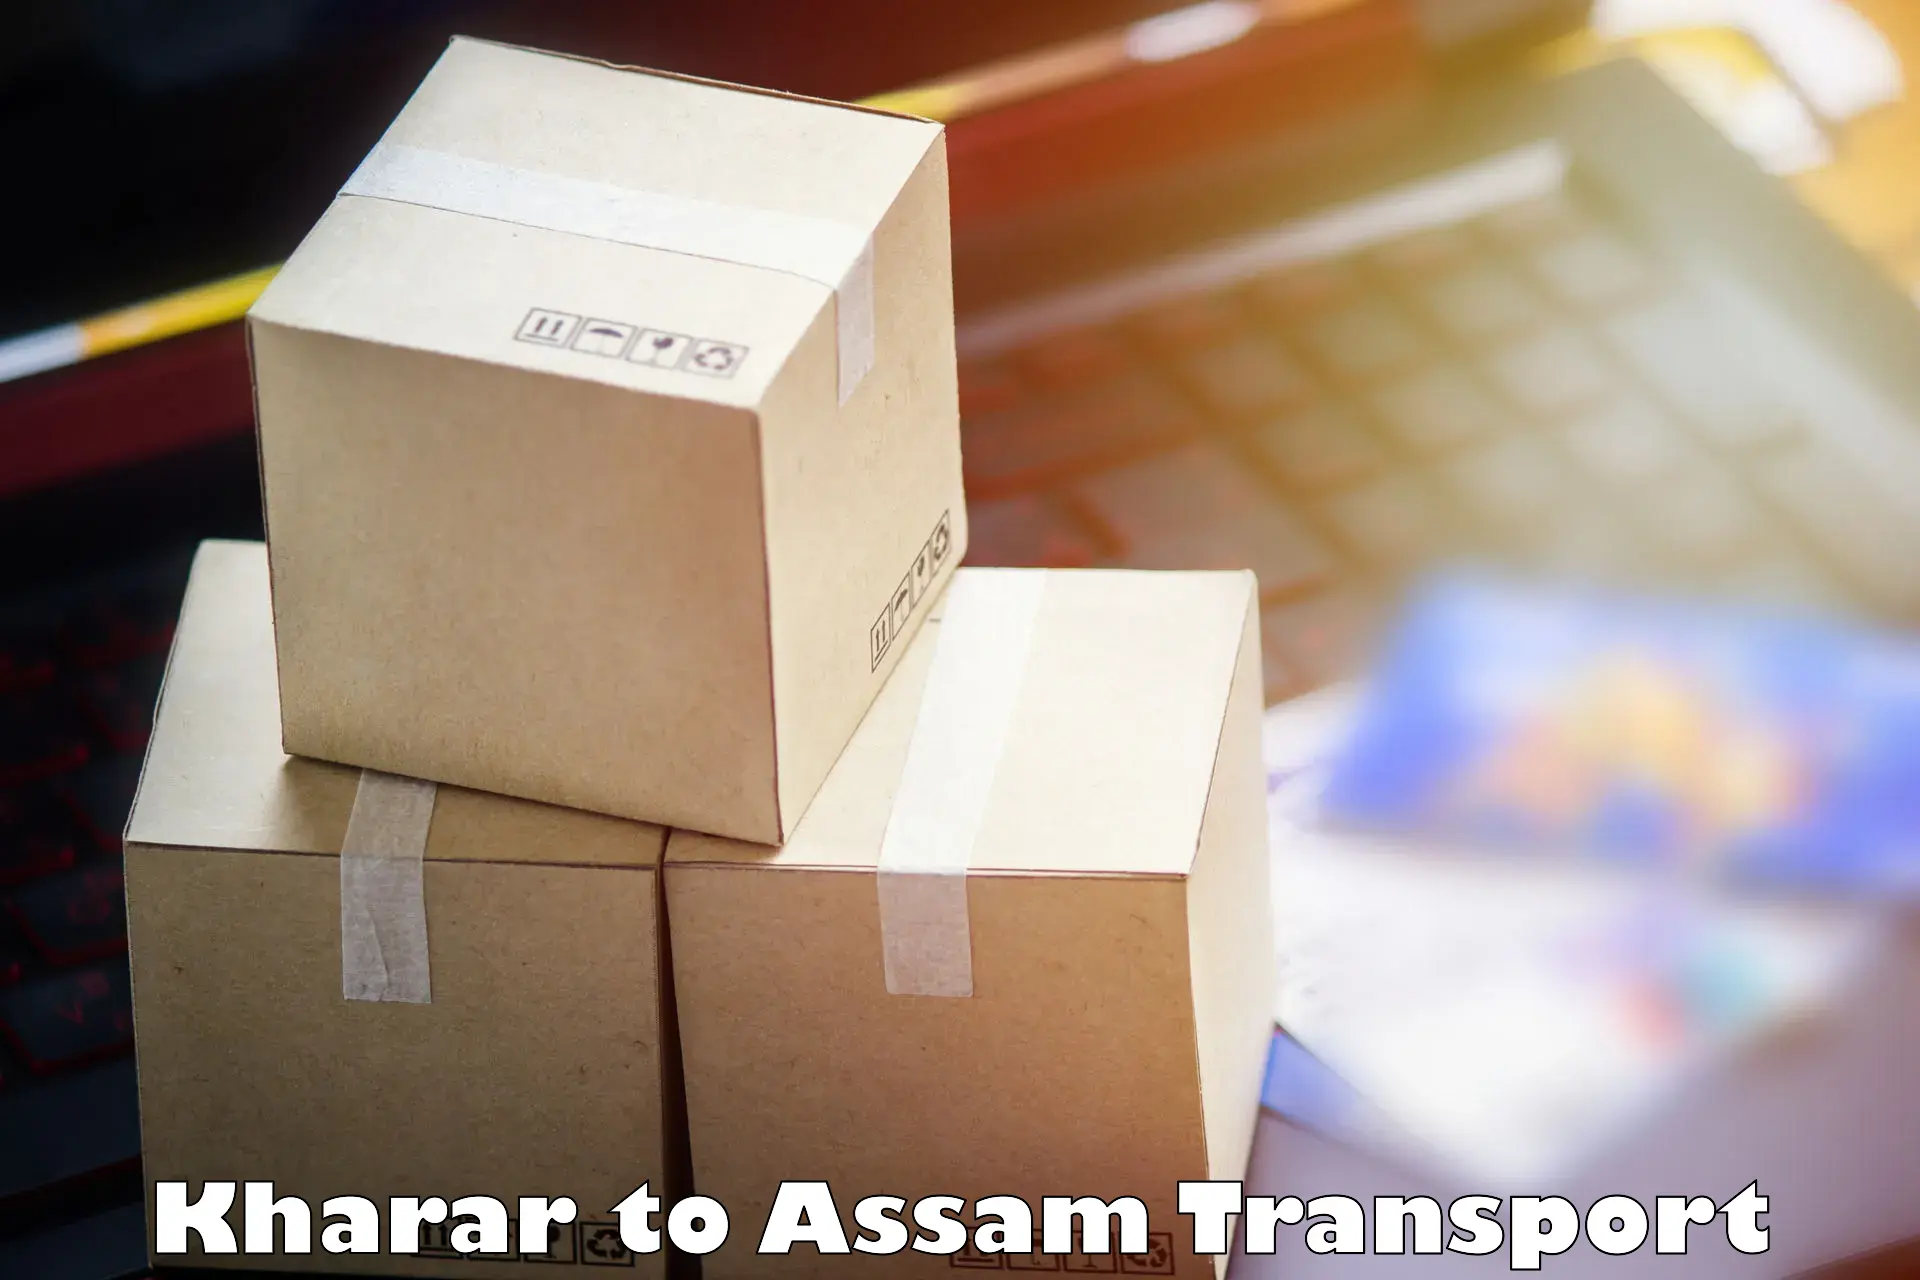 International cargo transportation services Kharar to Dibrugarh